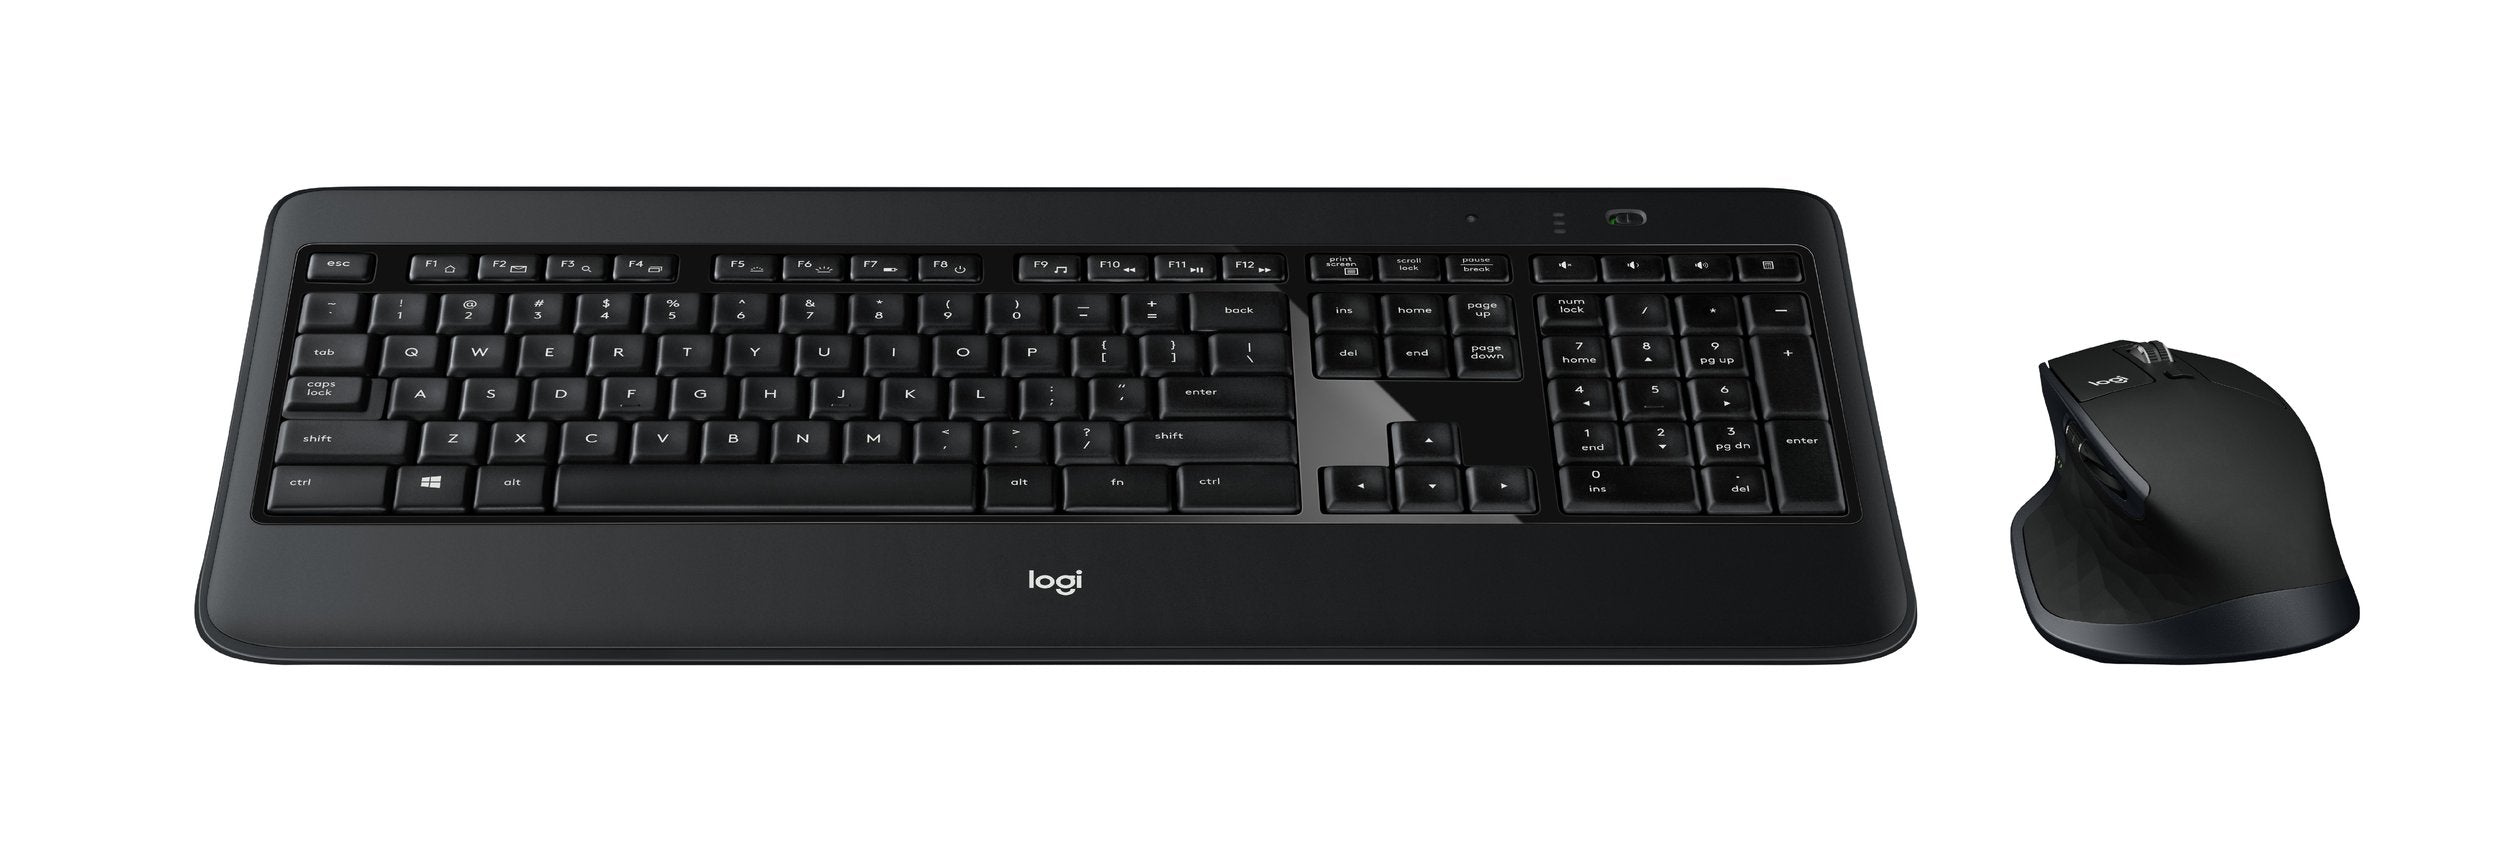 (B) Logitech MX900 Premium Kabelloses Tastatur-Maus-Set, 2.4 GHz Verbindung FR Azerty